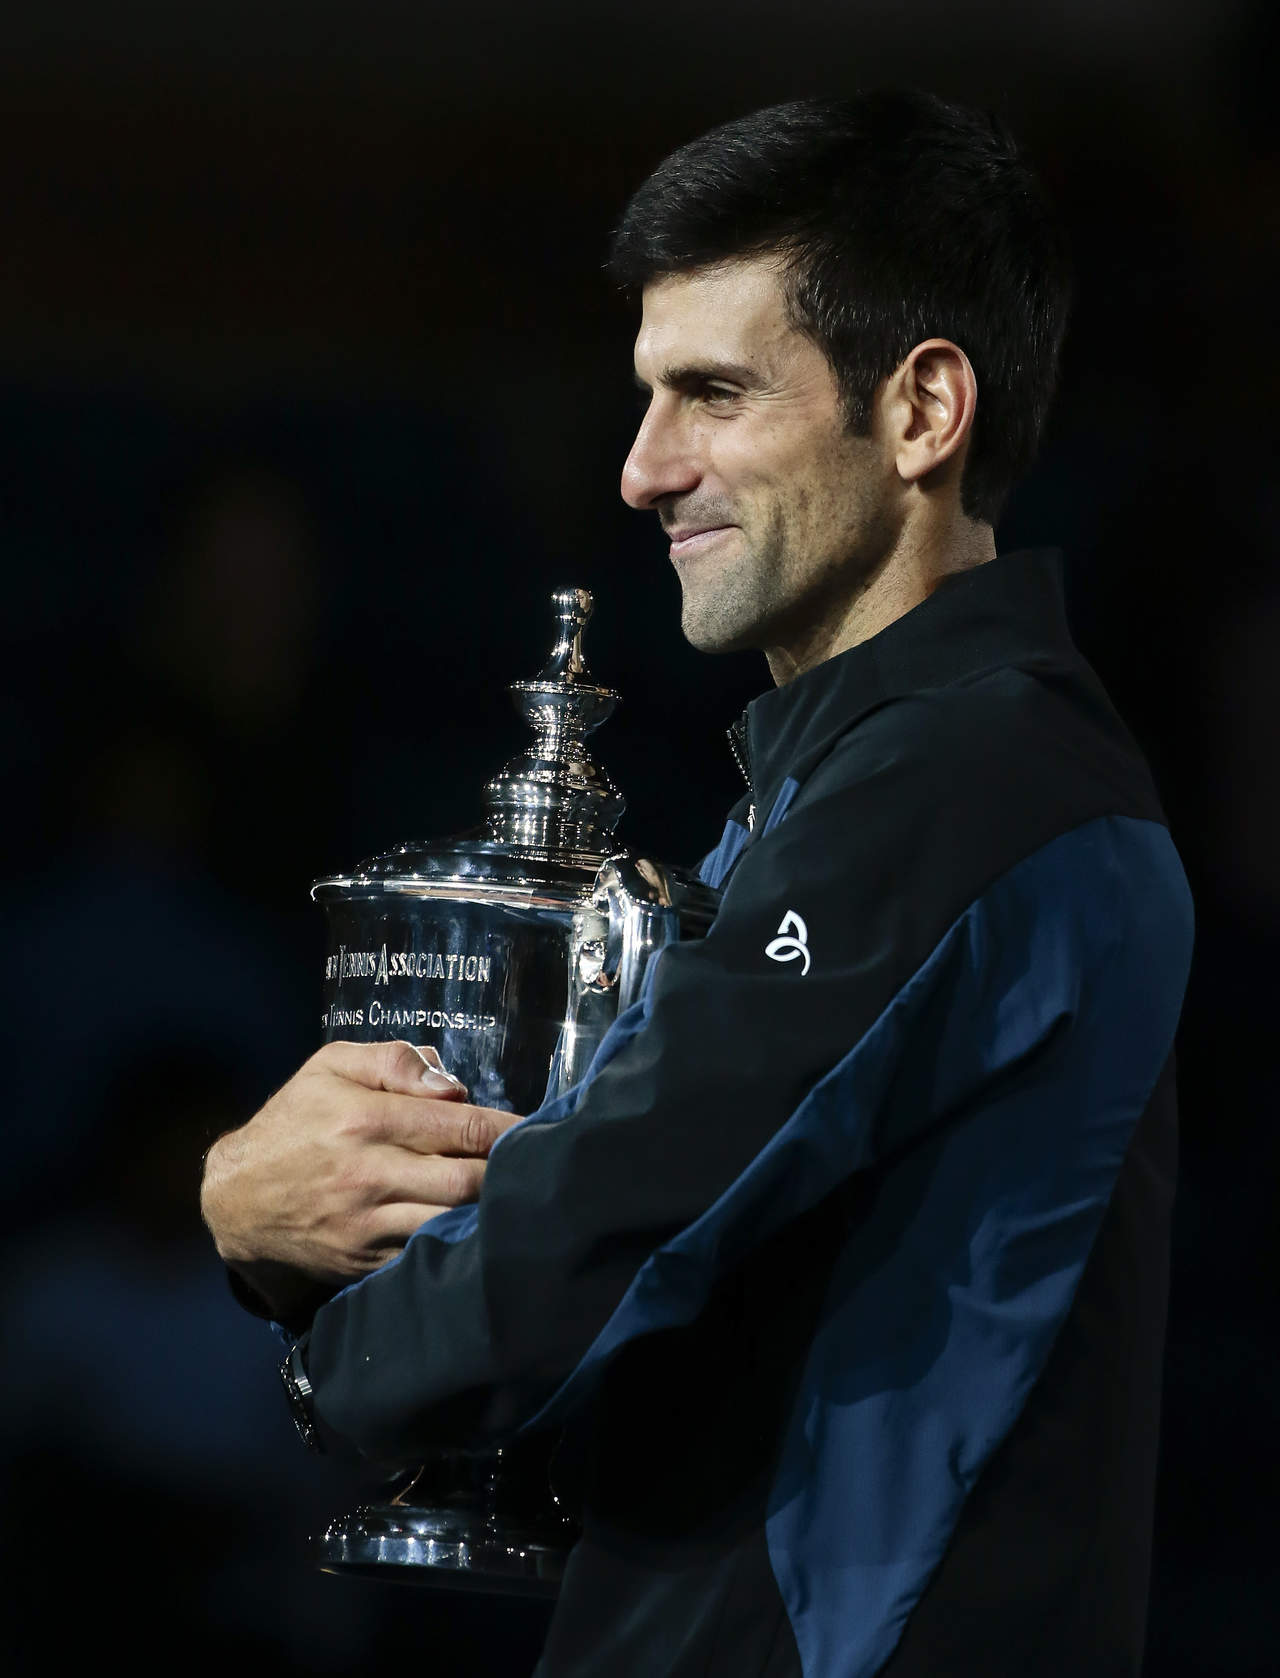 El serbio Novak Djokovic sostiene el trofeo de campeón tras vencer al argentino Juan Martín del Potro en la final de hombres del U.S. Open, en Nueva York.